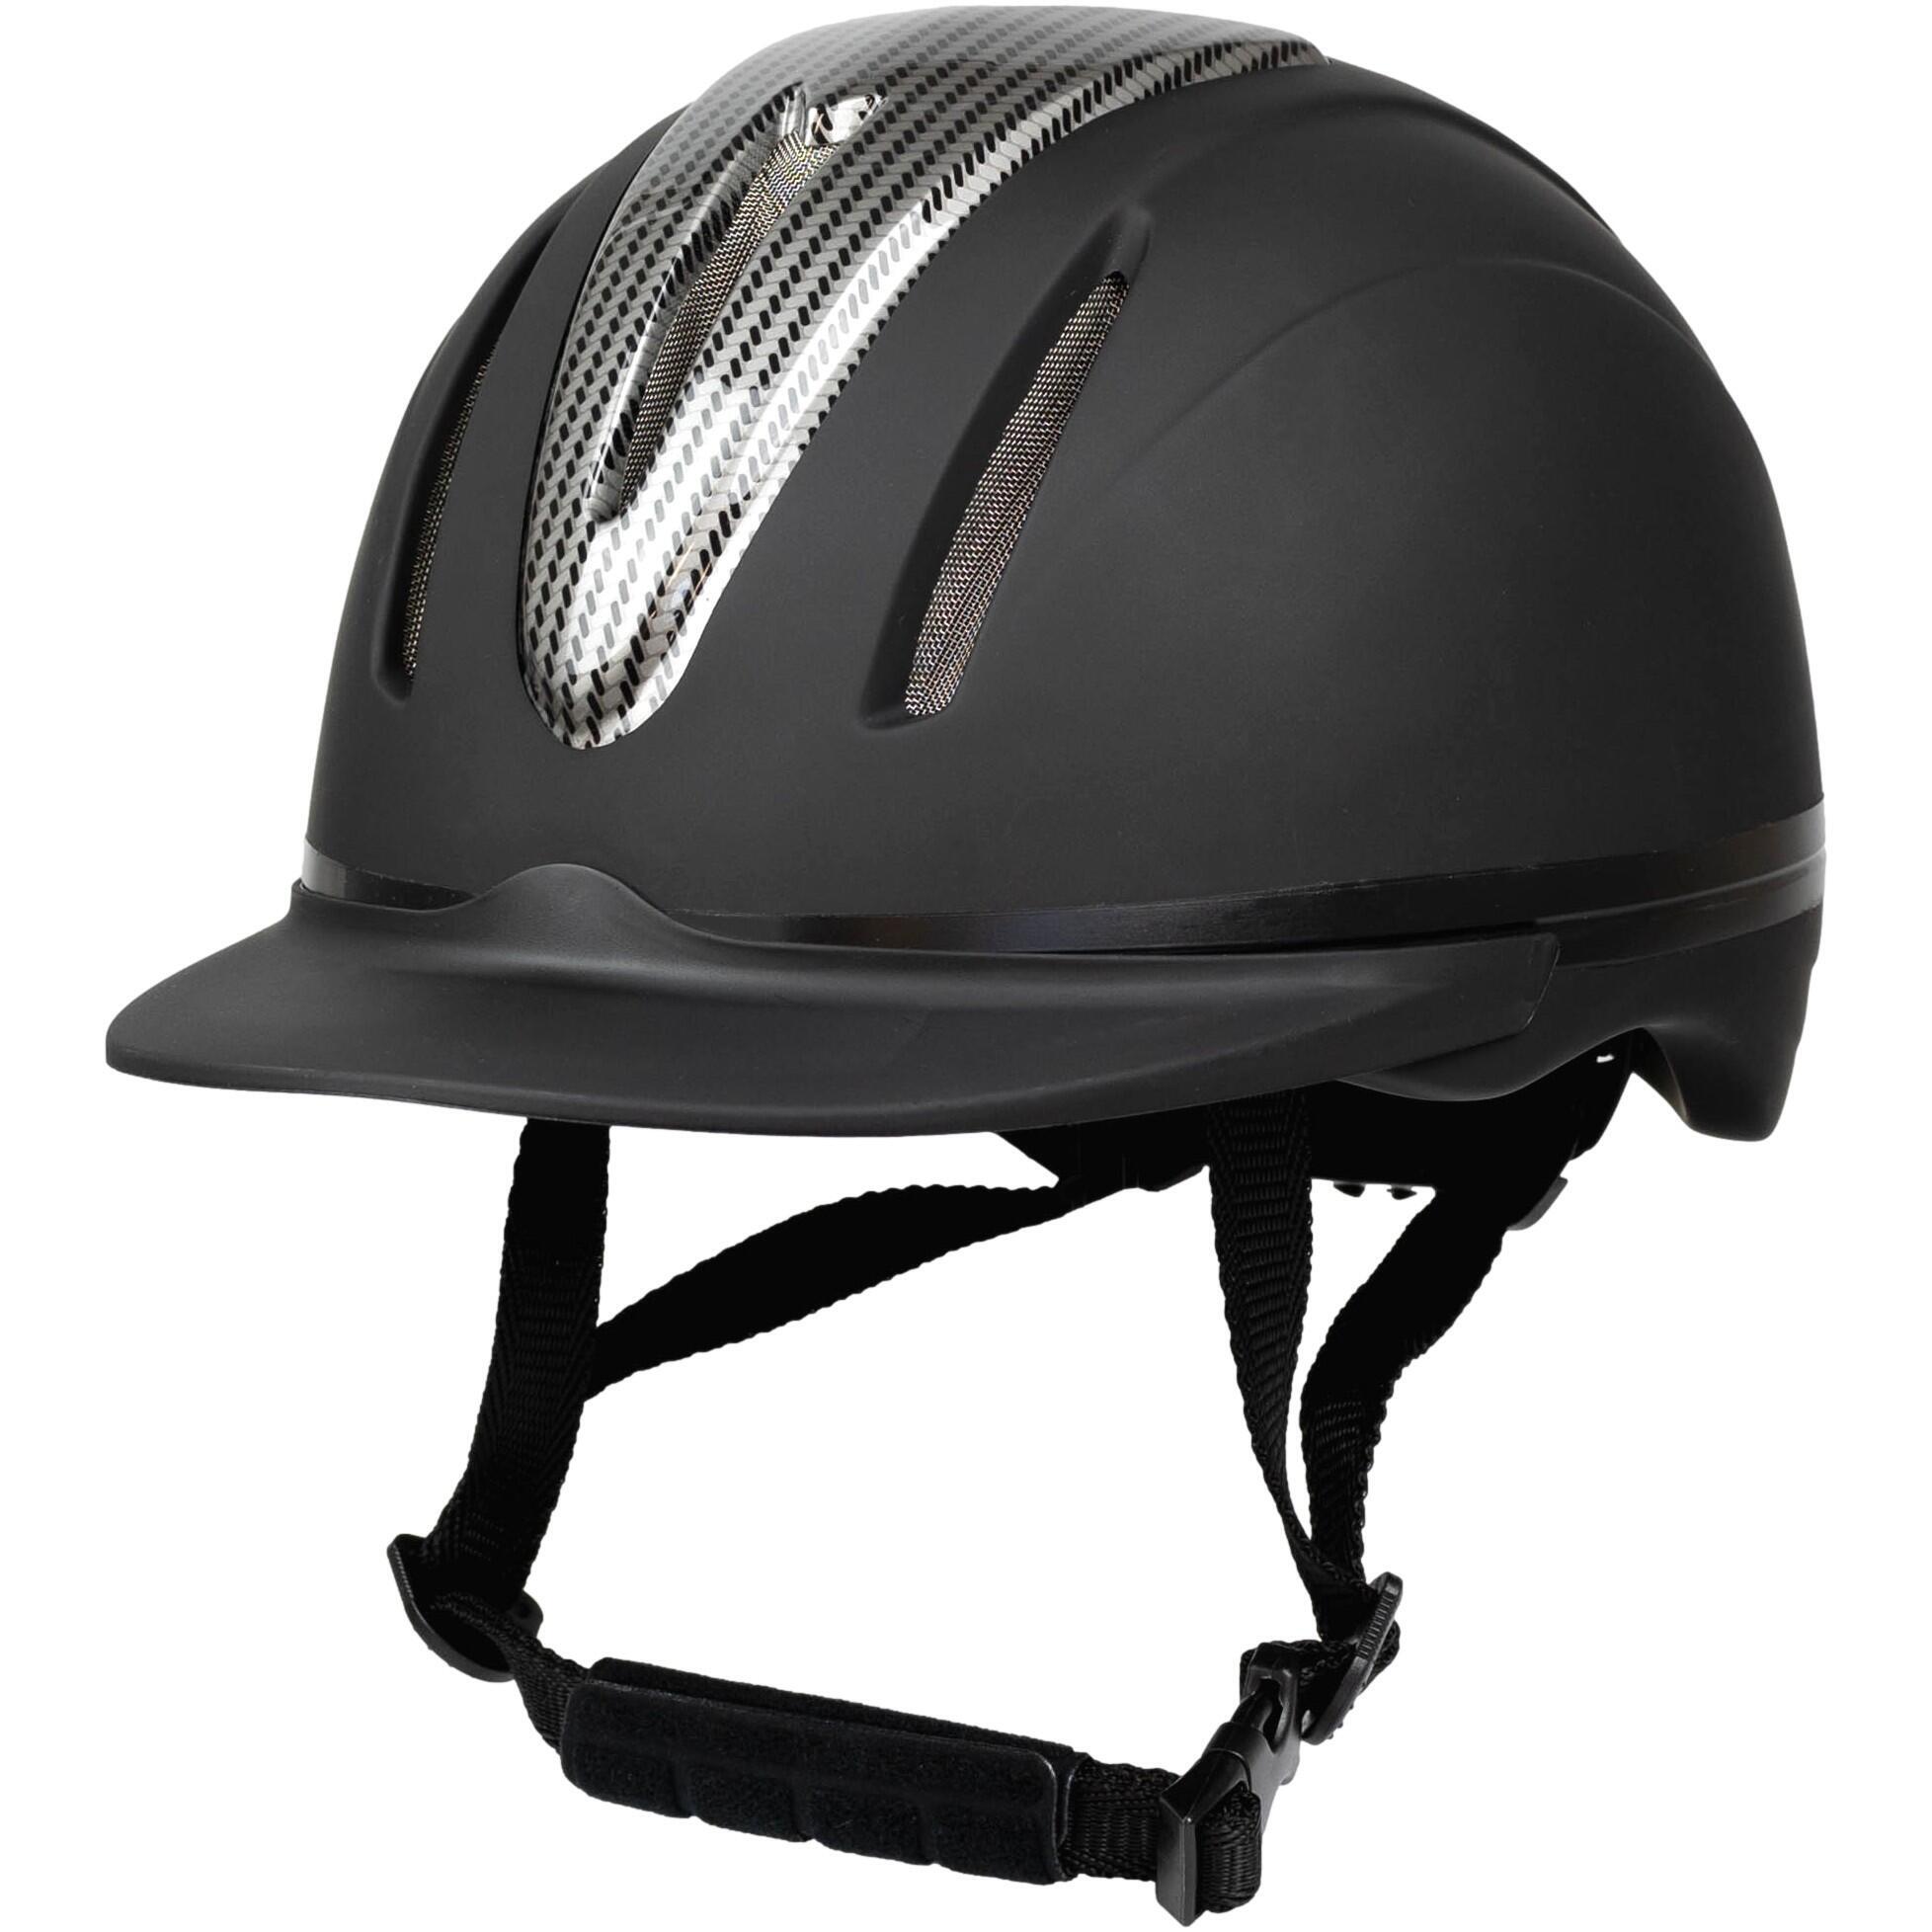 дышащий шлем для верховой езды защитный шлем костюм для верховой езды шлем для мужчин и женщин товары для верховой езды Шлем RL24 Innovation для верховой езды, черный